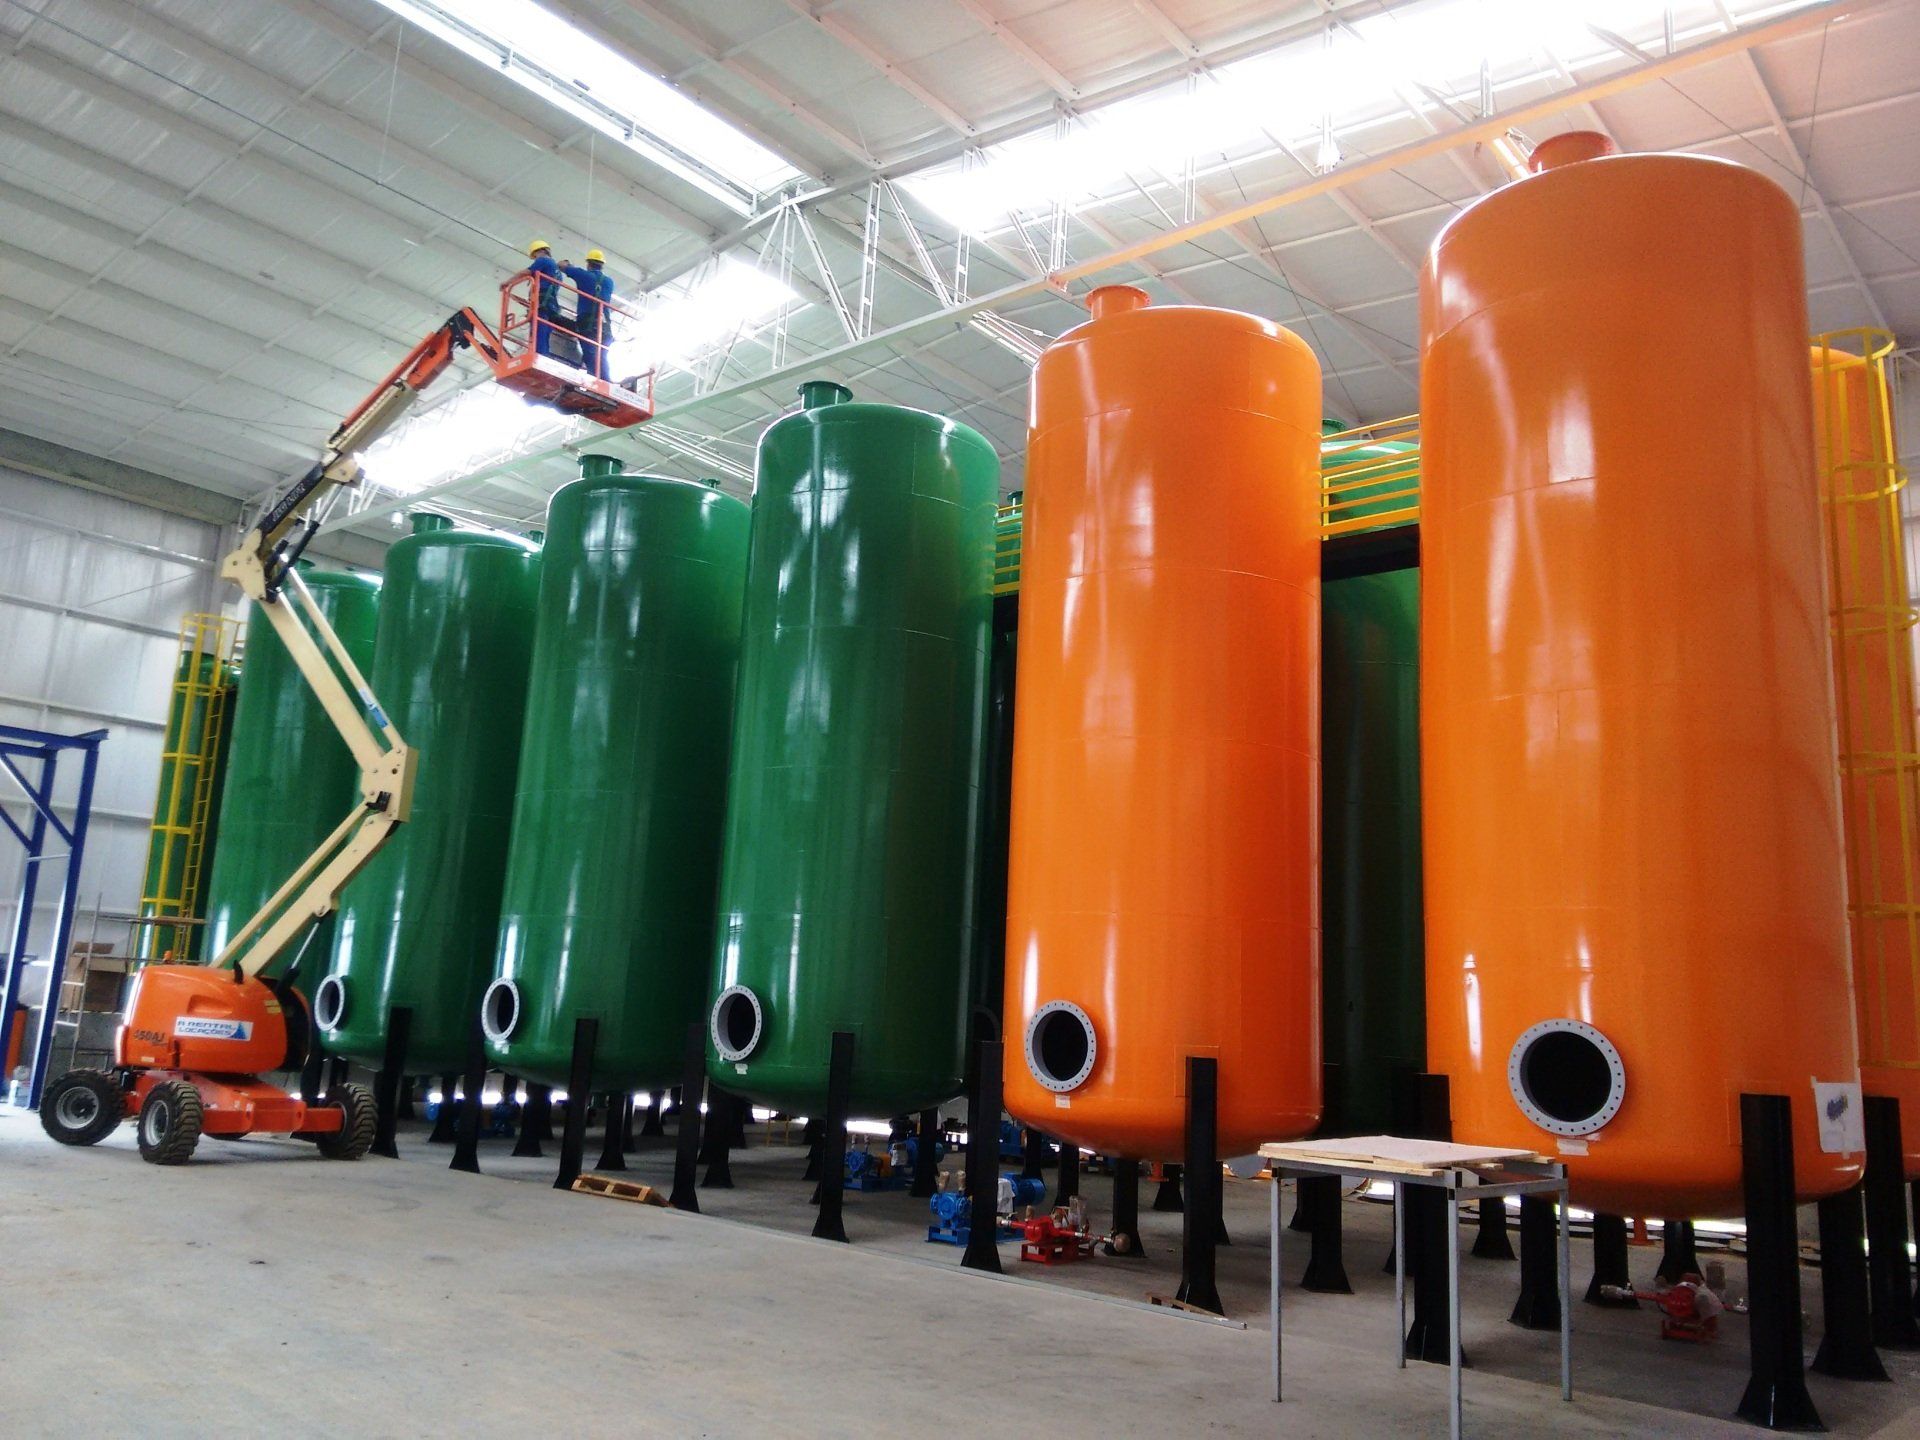 Fabricantes de vasos de pressão industriais em aço carbono ou aço inoxidável